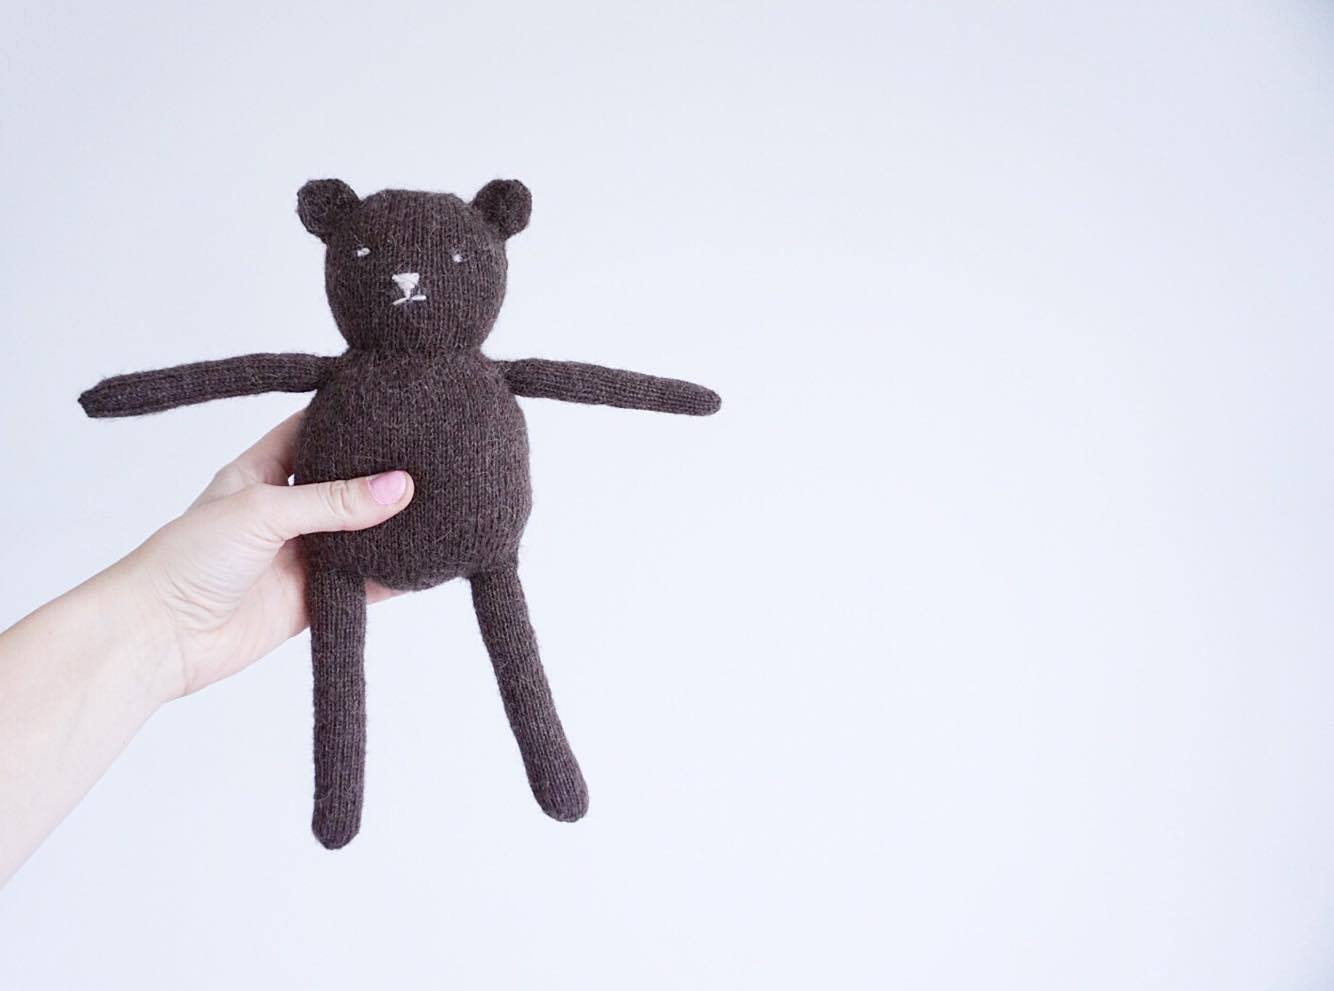  - Teddy bear knitting pattern. Knit a toy friend - by HipKnitShop - 30/10/2017